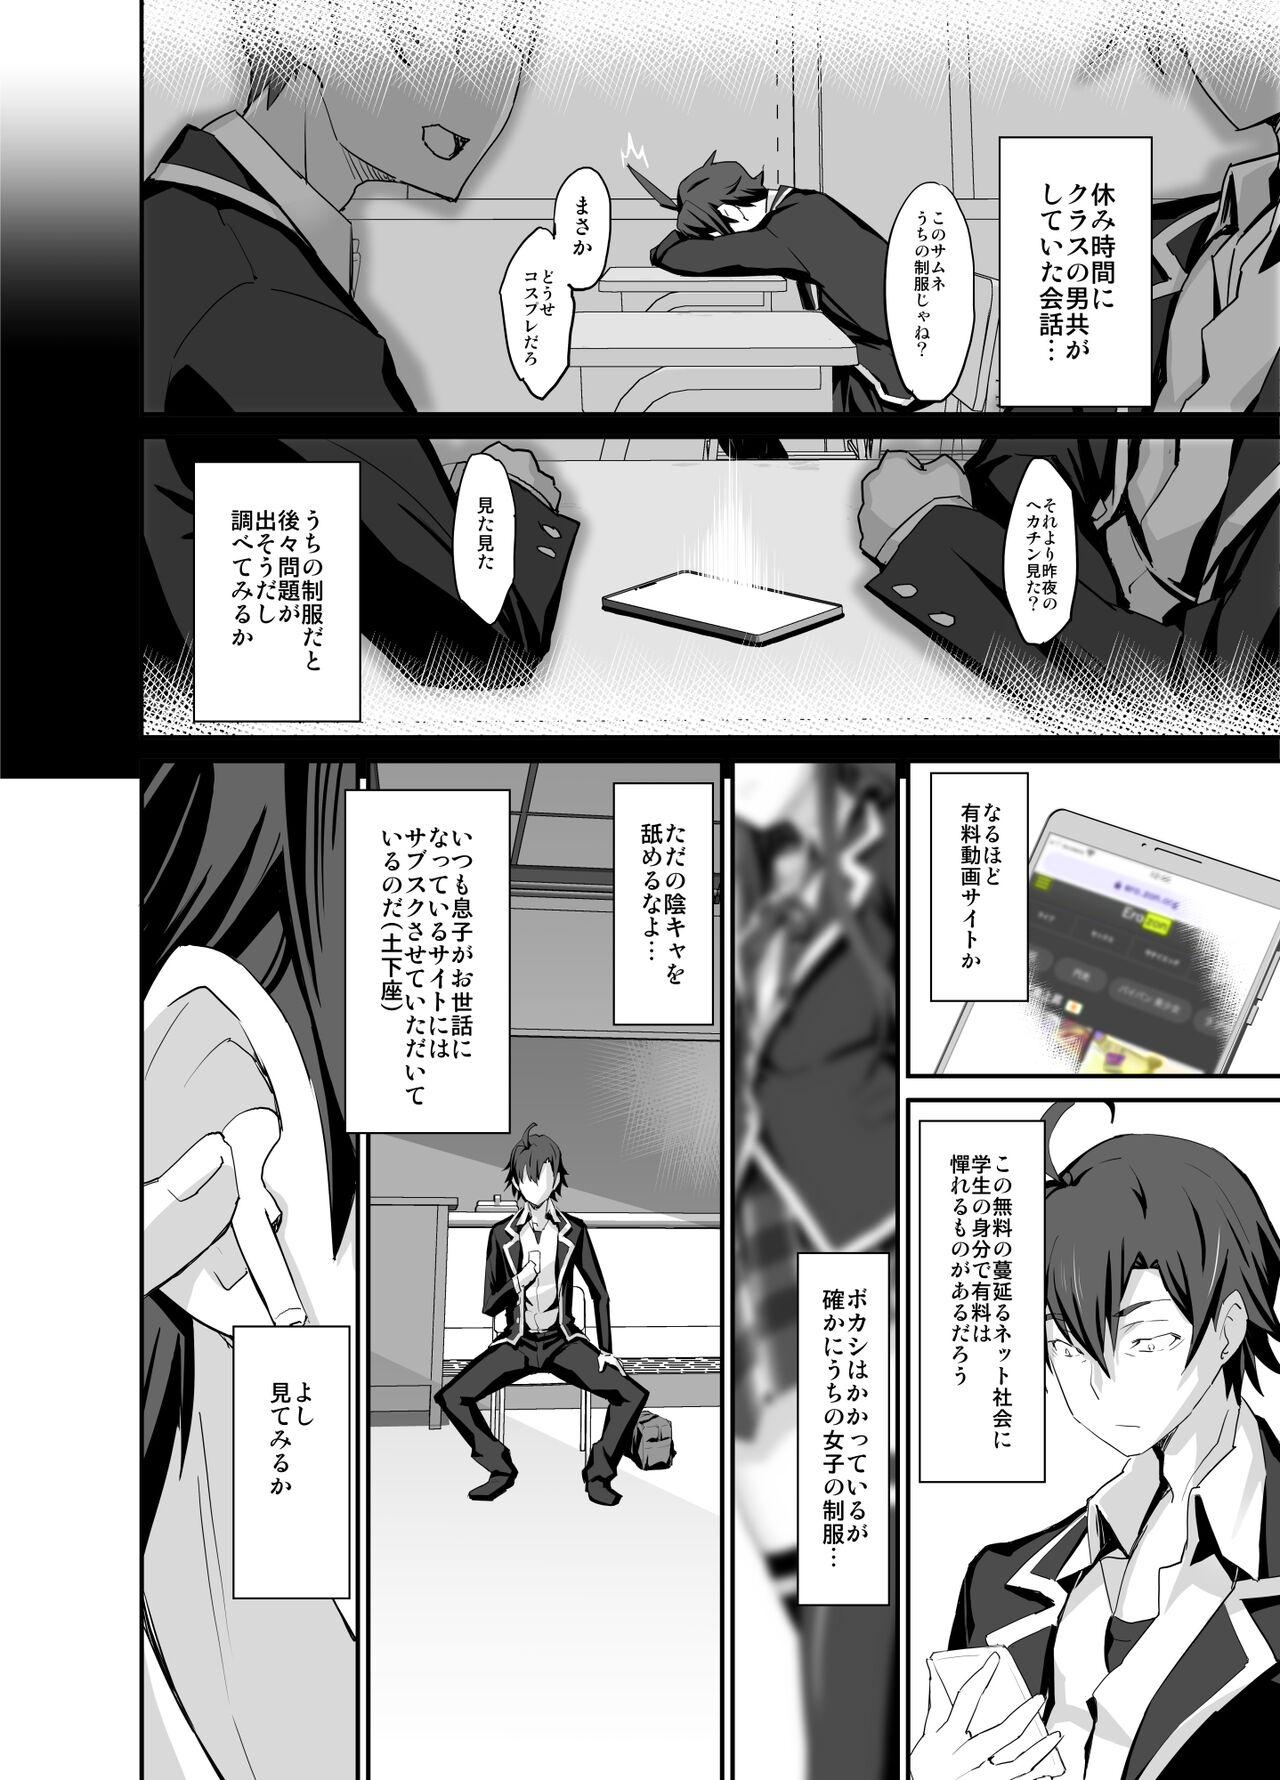 Old Douse Ore no Seishun Love Come wa DT de Owatteiru. - Yahari ore no seishun love come wa machigatteiru Passion - Page 4